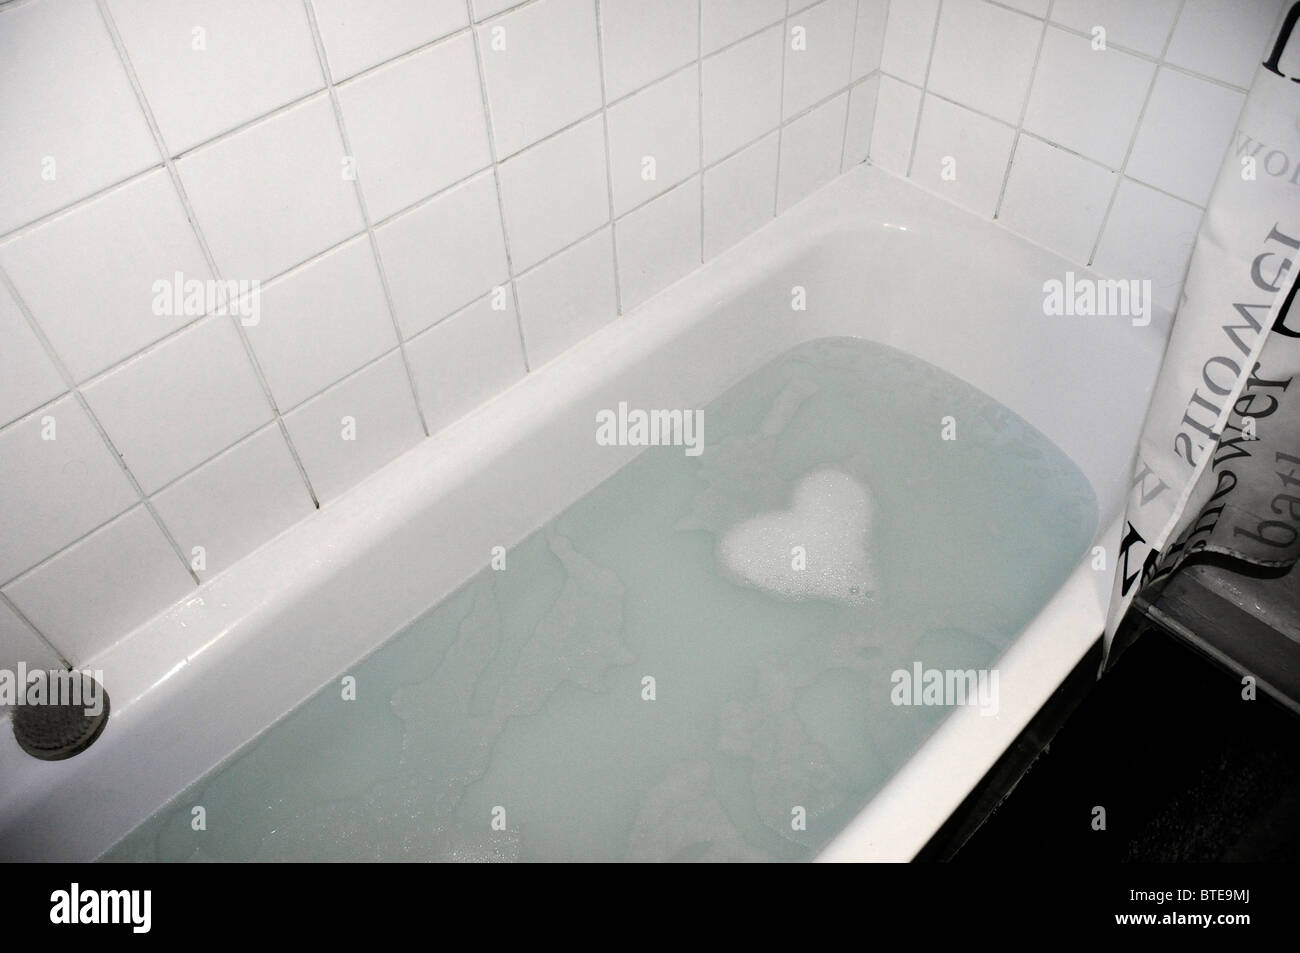 De l'eau savonneuse formant une baignoire en forme de coeur Photo Stock -  Alamy